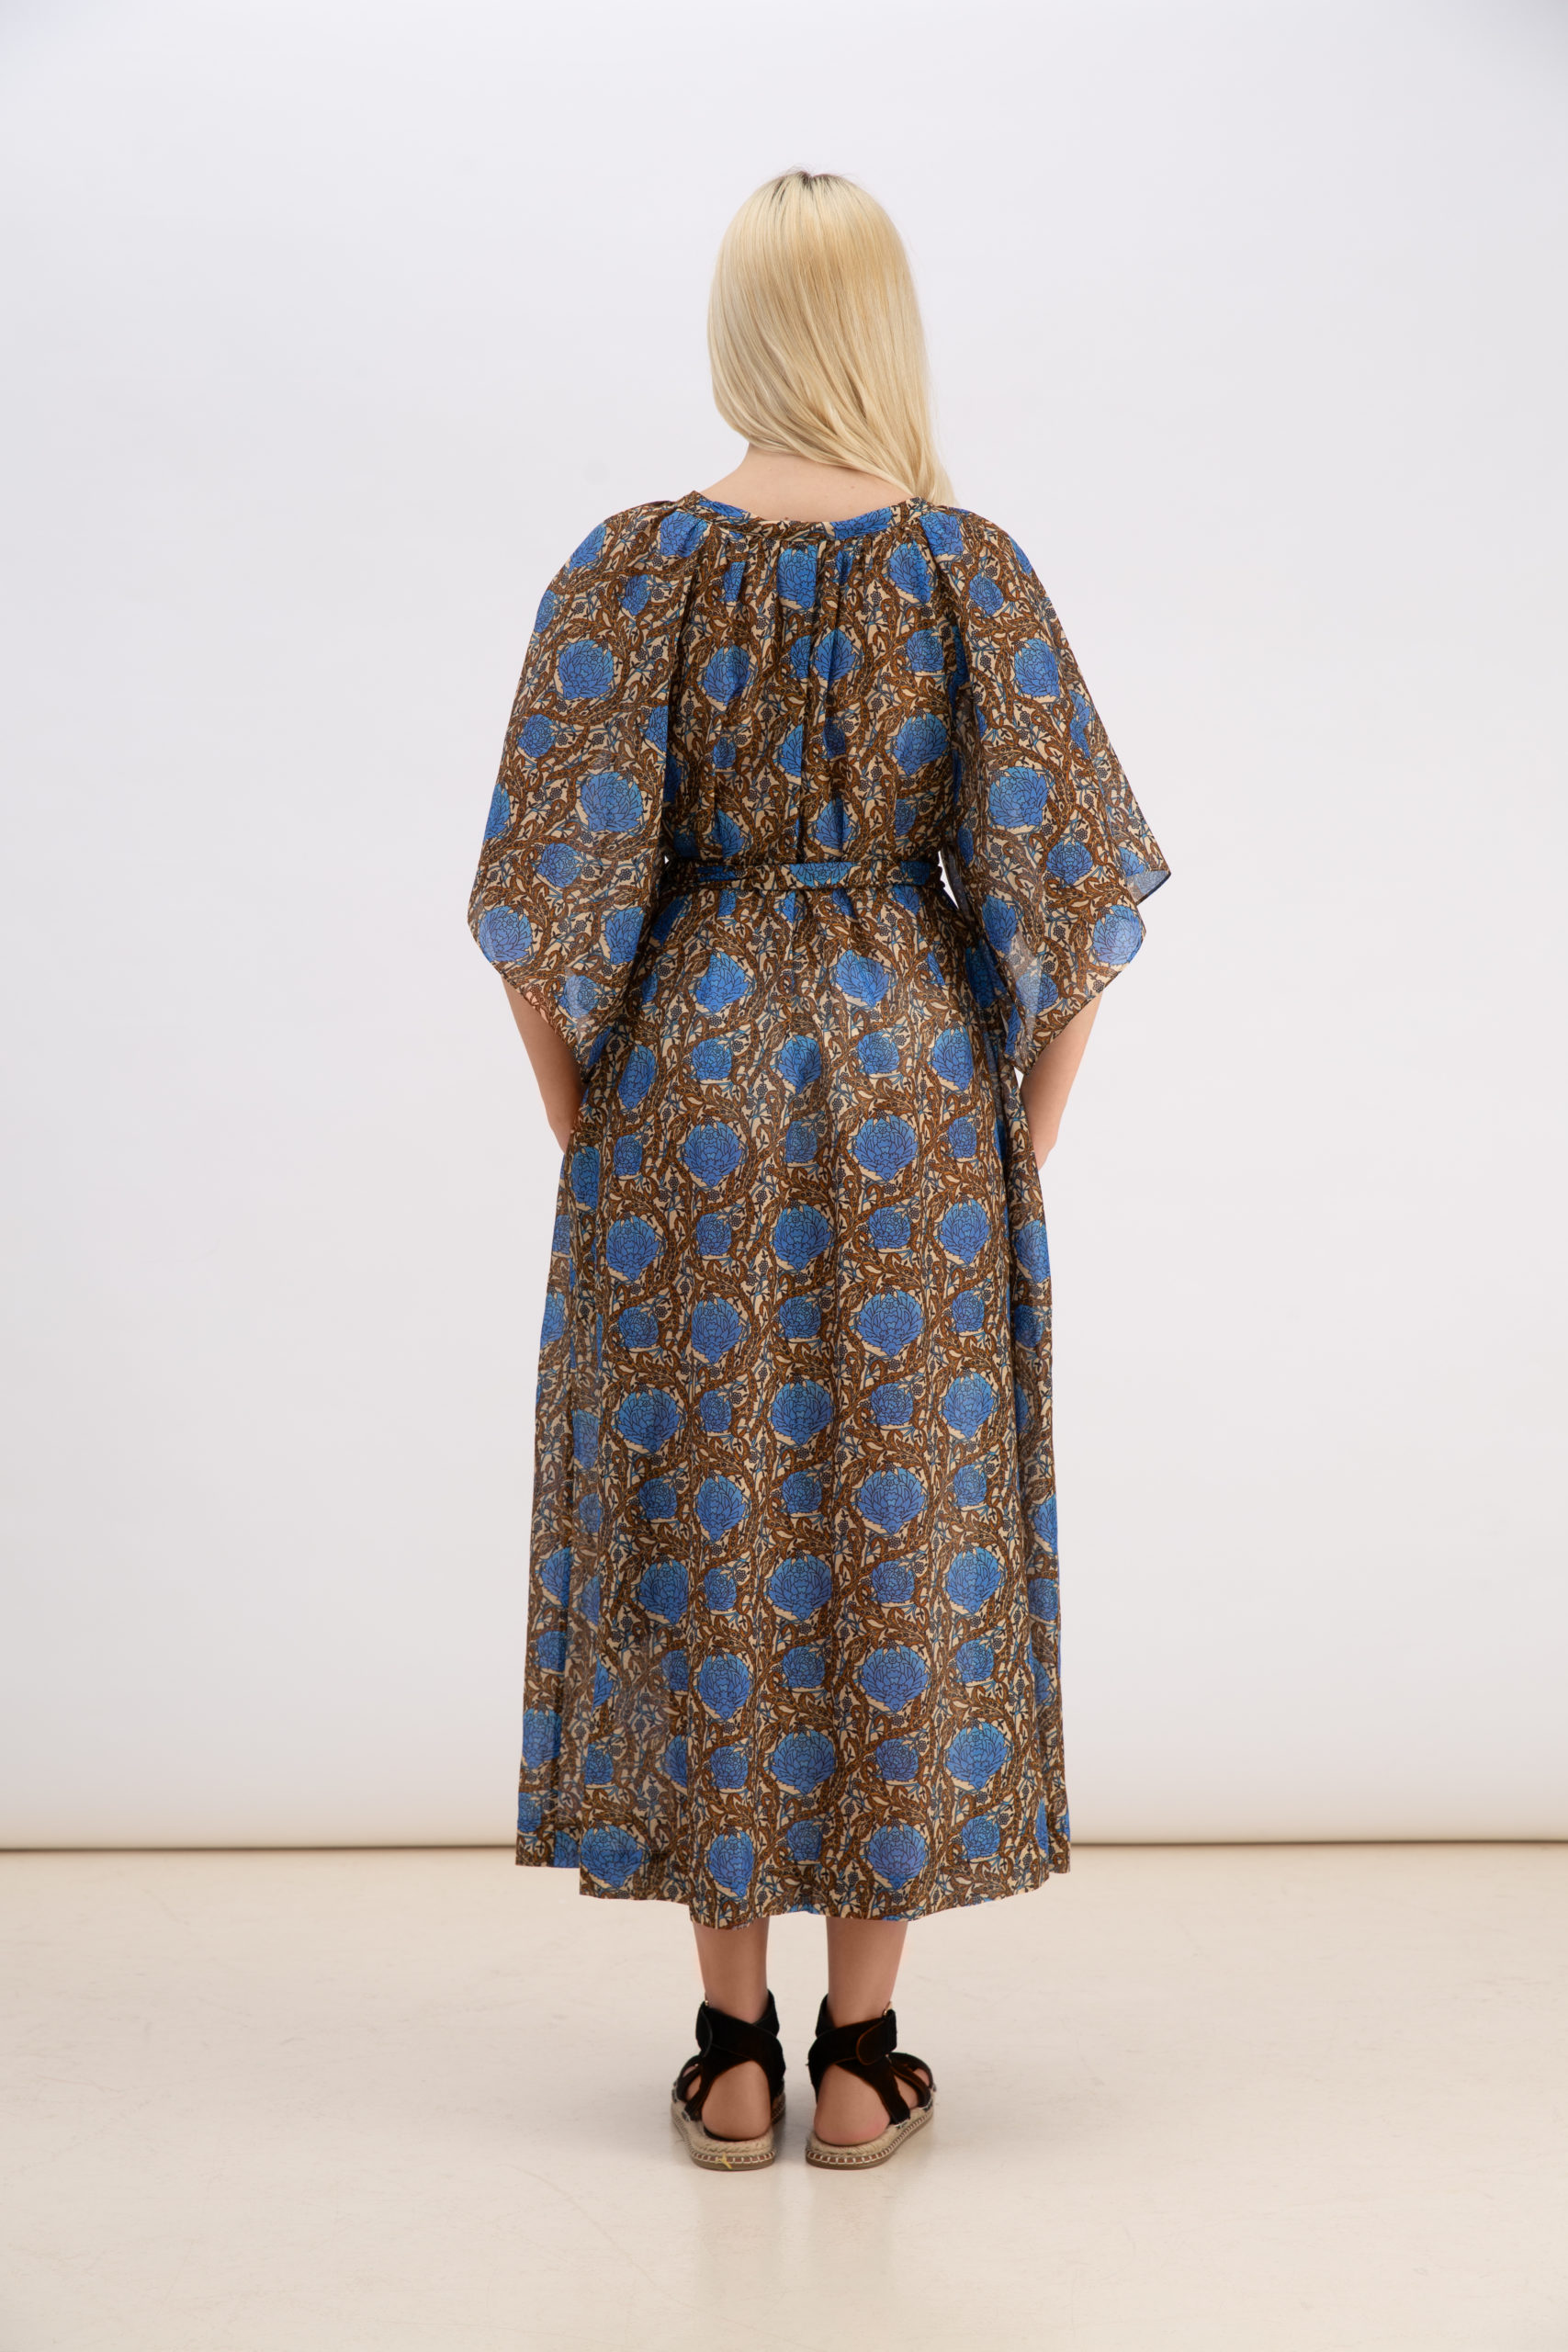 La Fontelina Dress - A-MERE-CO| Official Online Shop | Womenswear